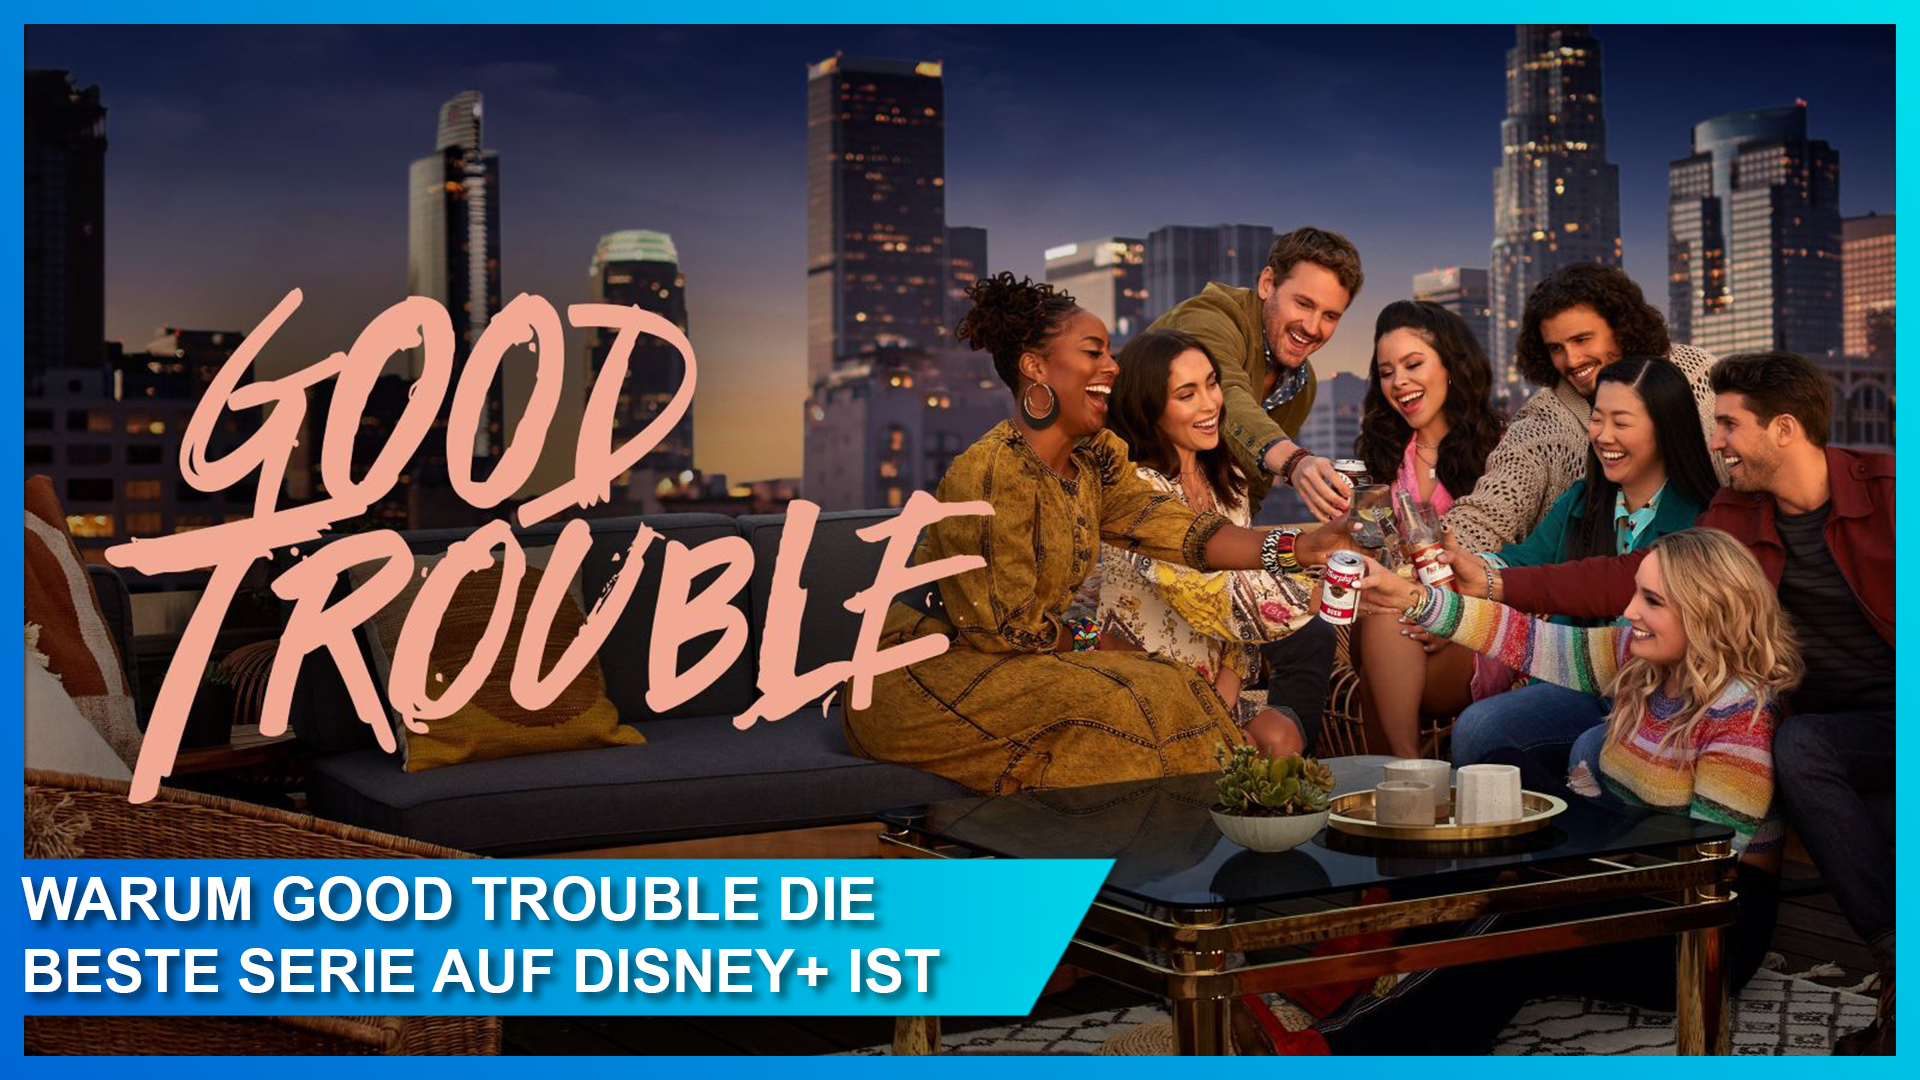 Warum Good Trouble die wahrscheinlich beste Serie auf Disney+ ist